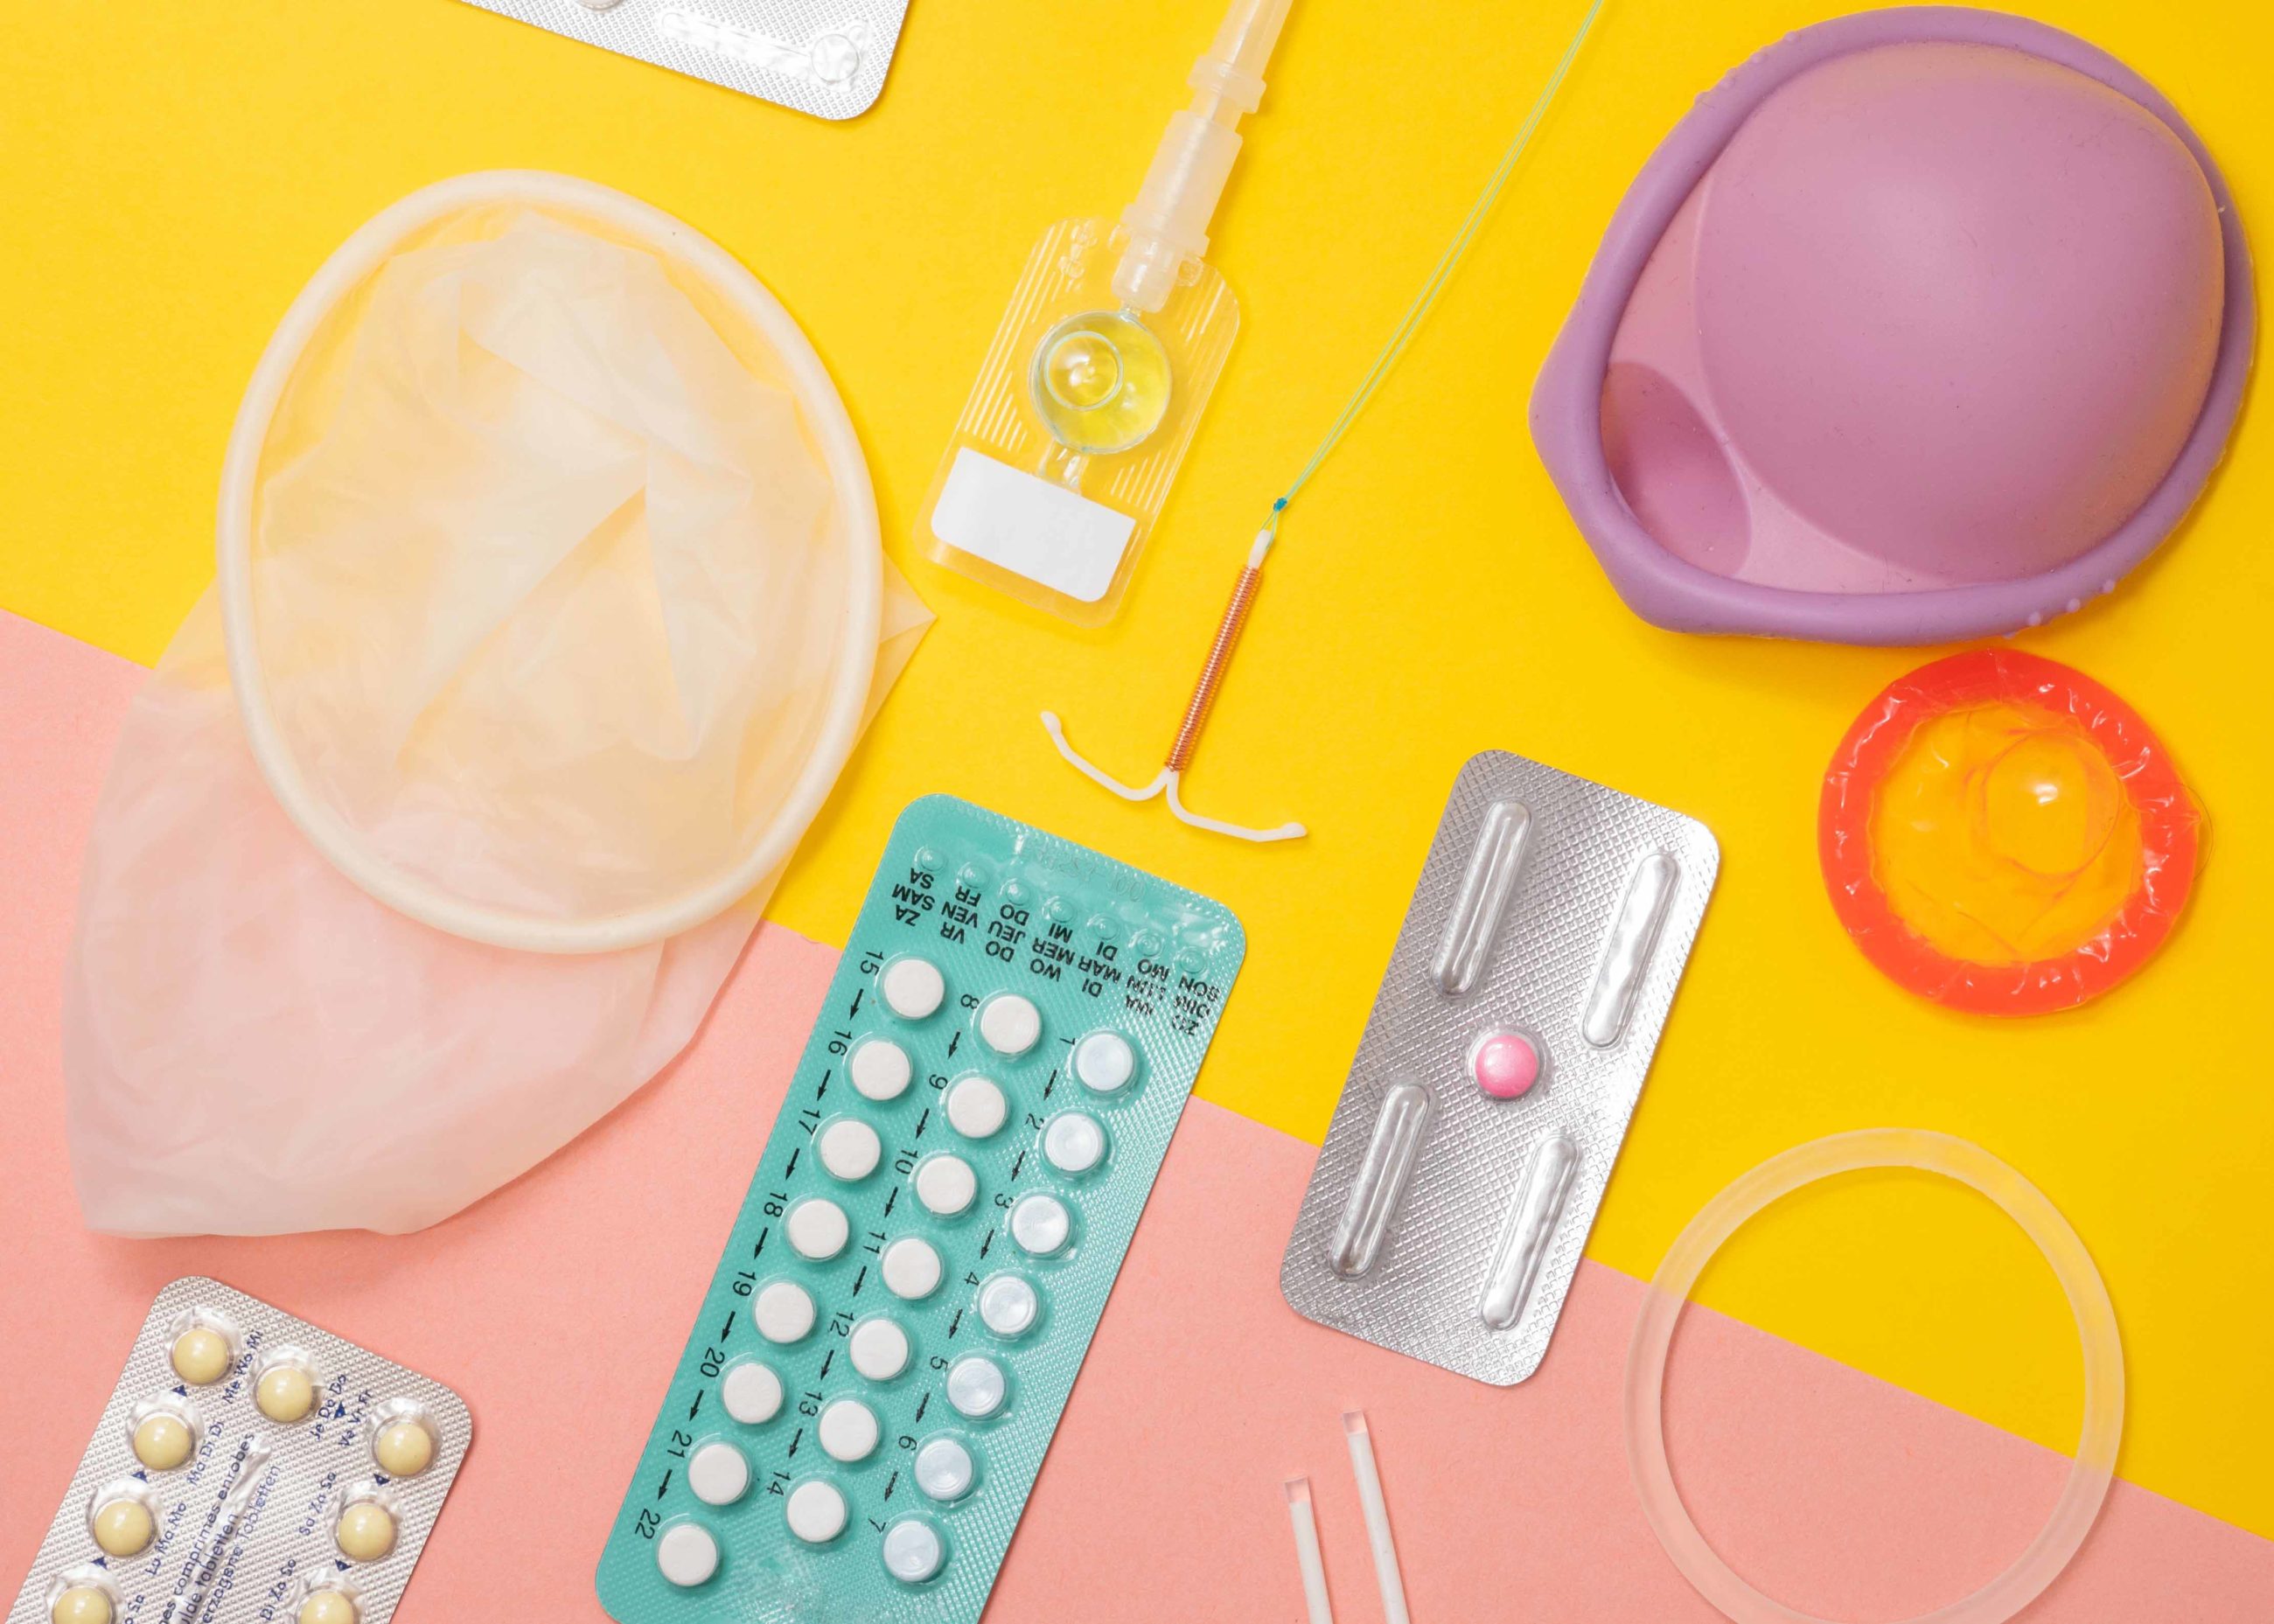 Vue de différentes méthodes de contraception